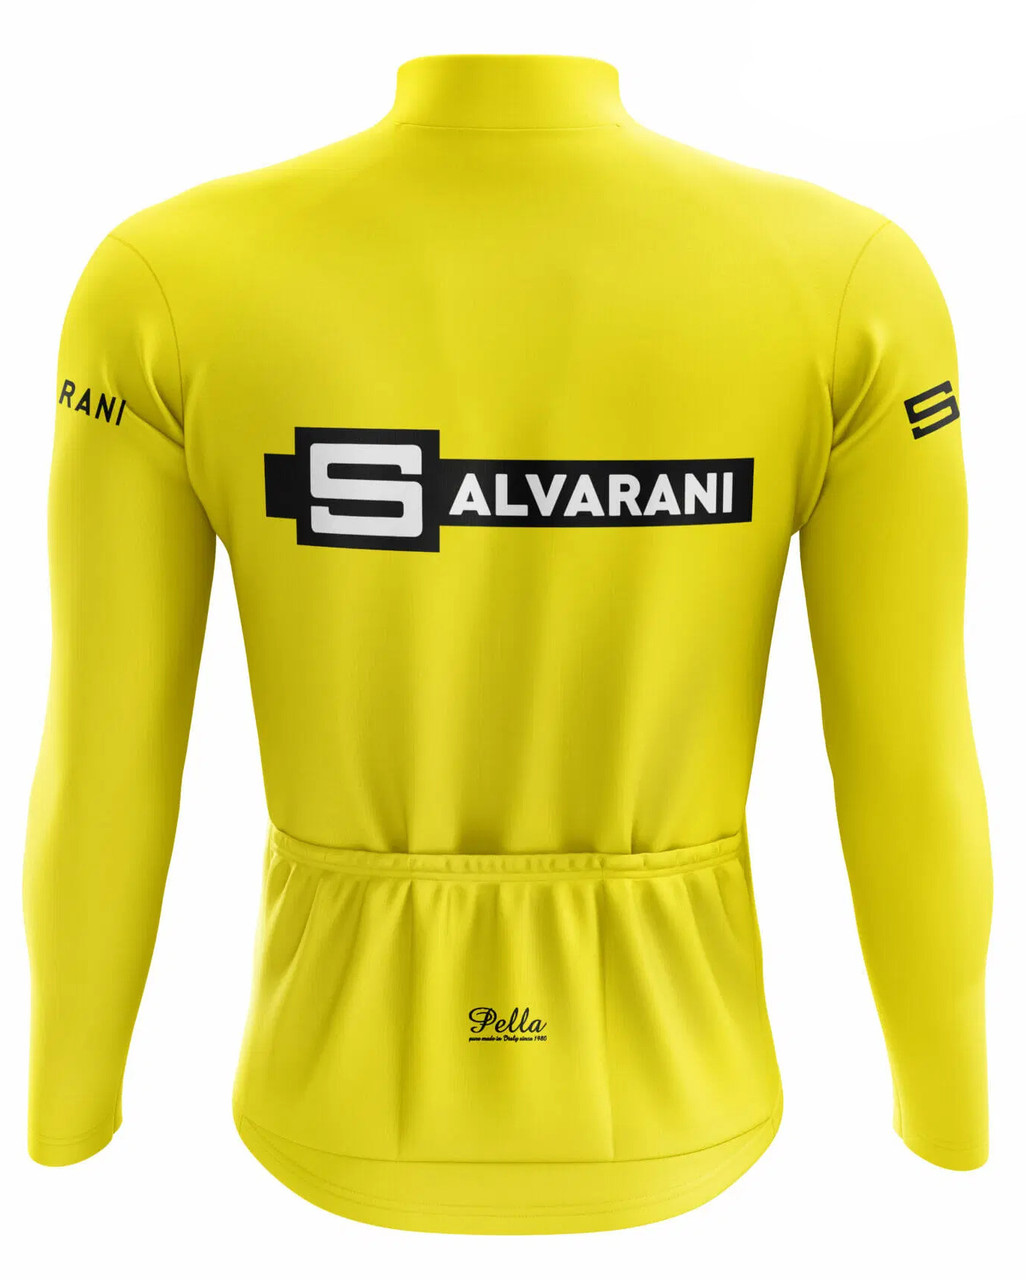 Salvarani Vuelta Yellow 68 Long Sleeve Jersey 